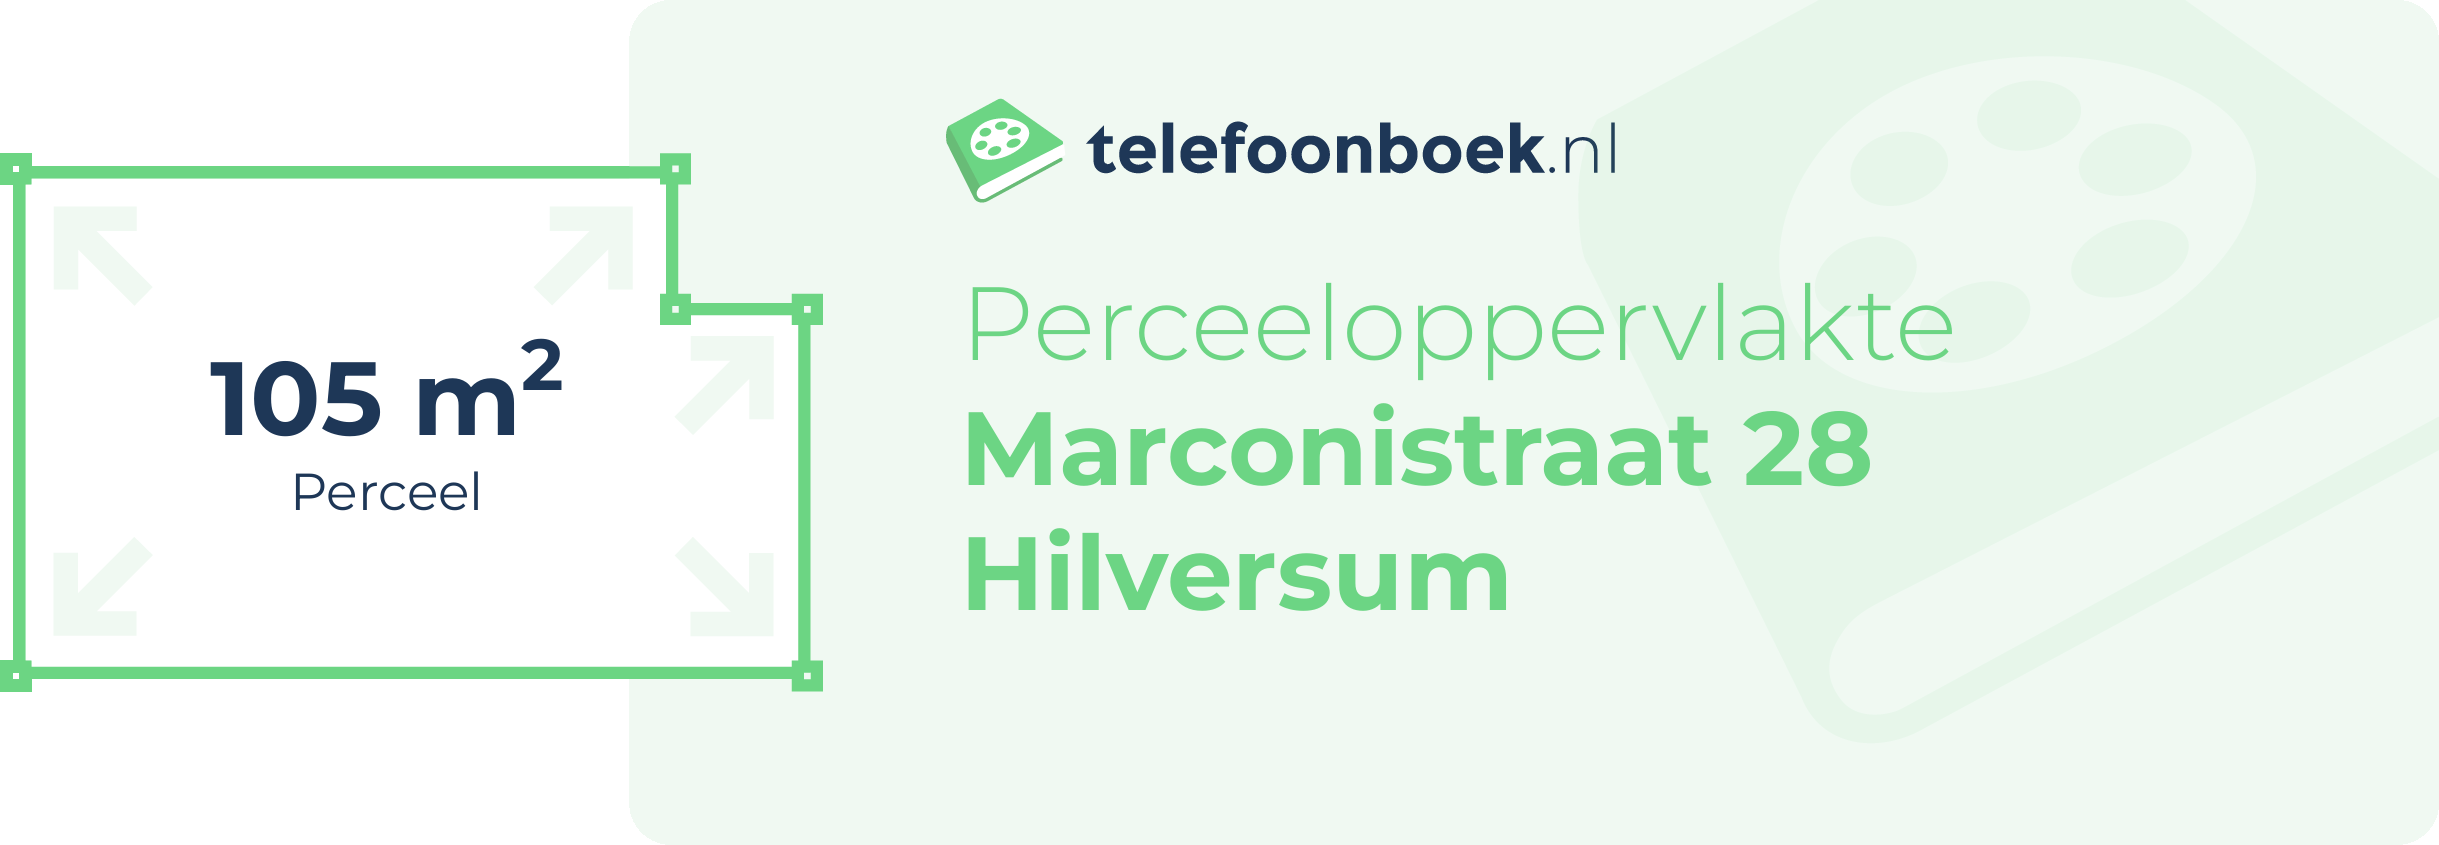 Perceeloppervlakte Marconistraat 28 Hilversum